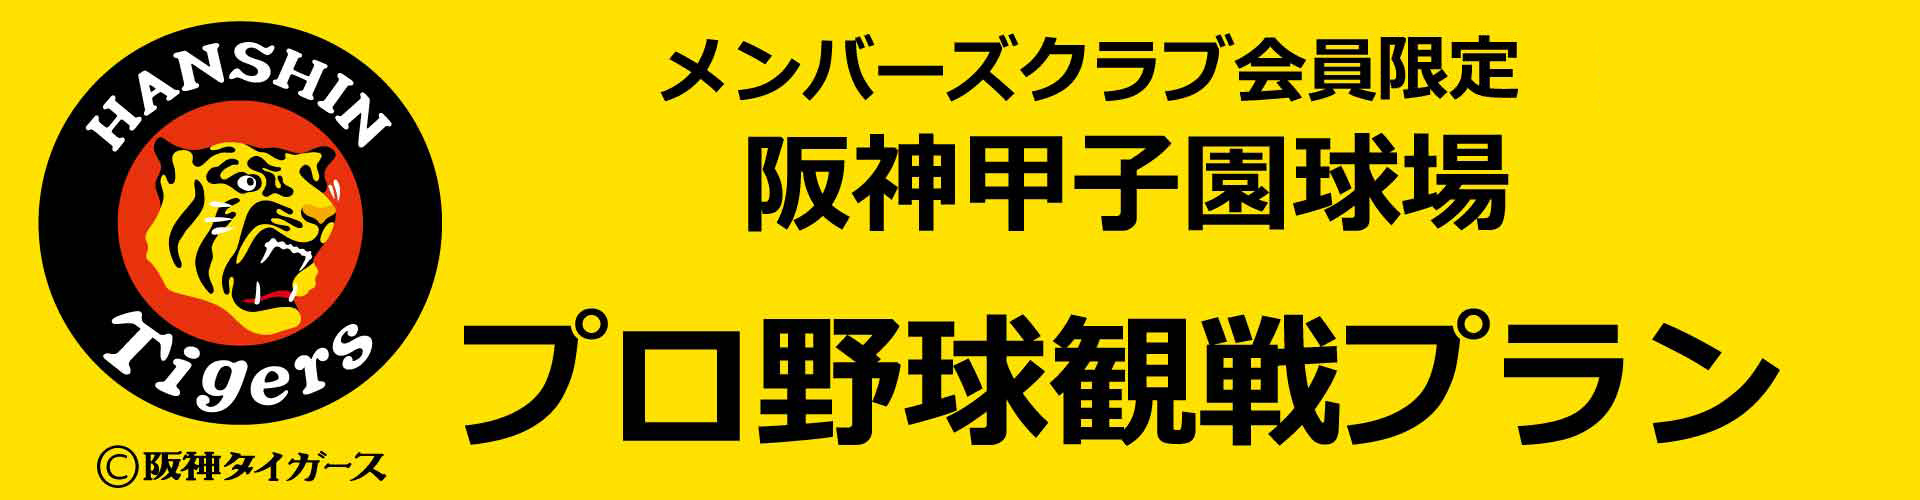 メンバーズクラブ会員限定 阪神甲子園球場プロ野球観戦プラン